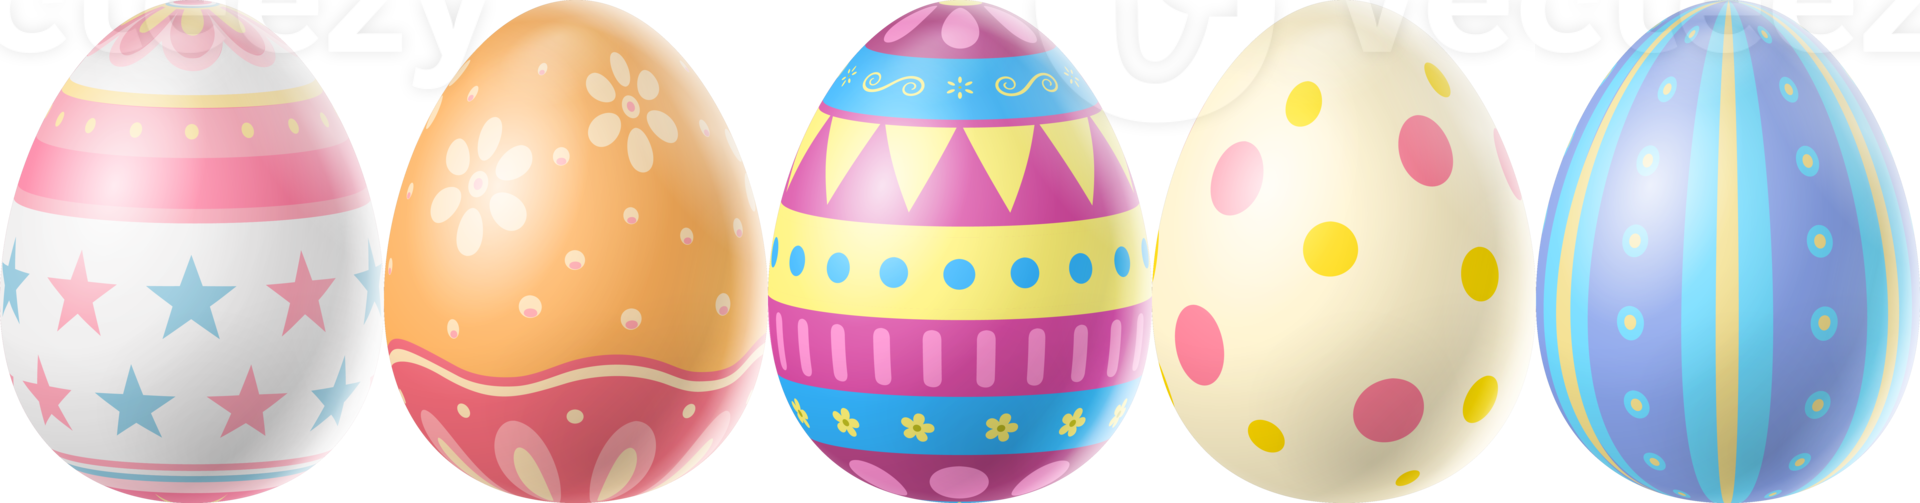 contento Pasqua giorno colorato uovo png